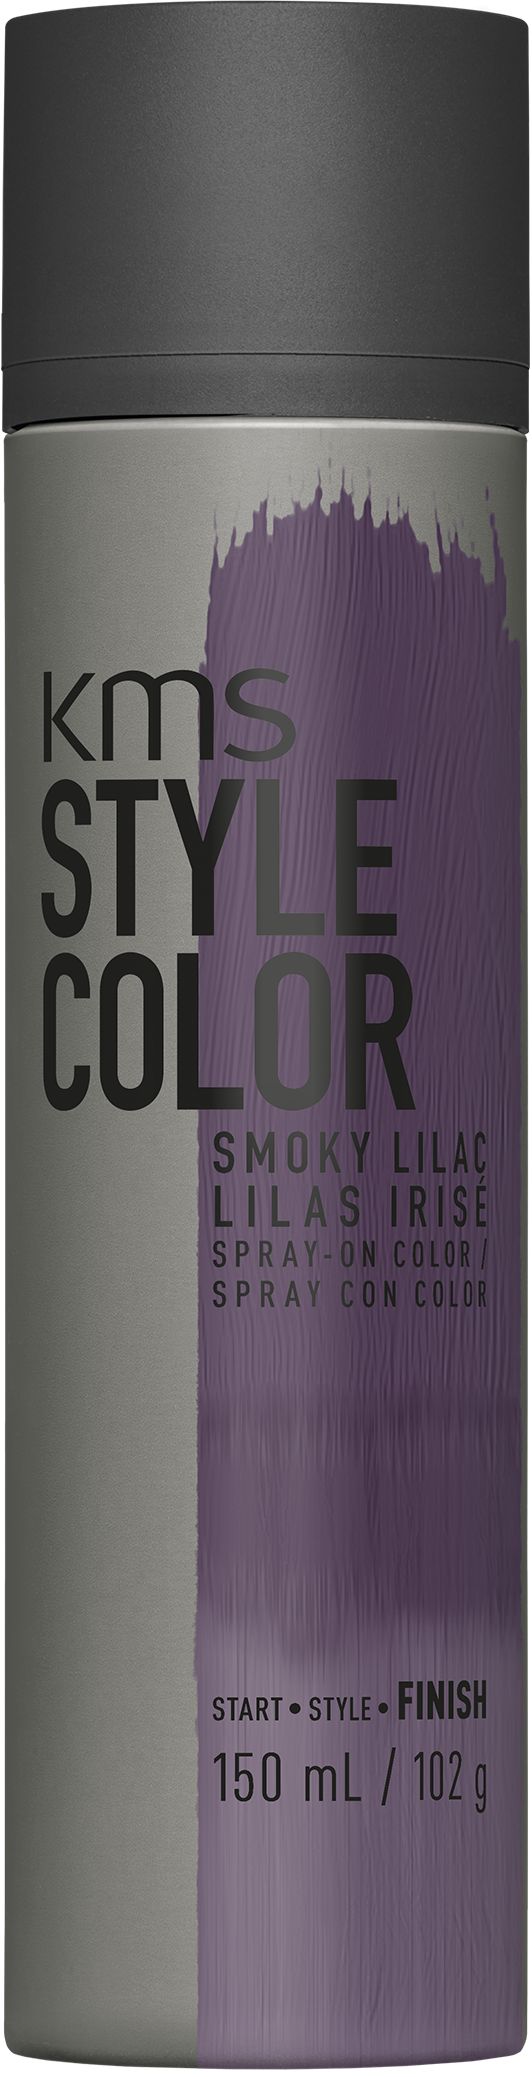 KMS Stylecolor Smoky Lilac 150 ml